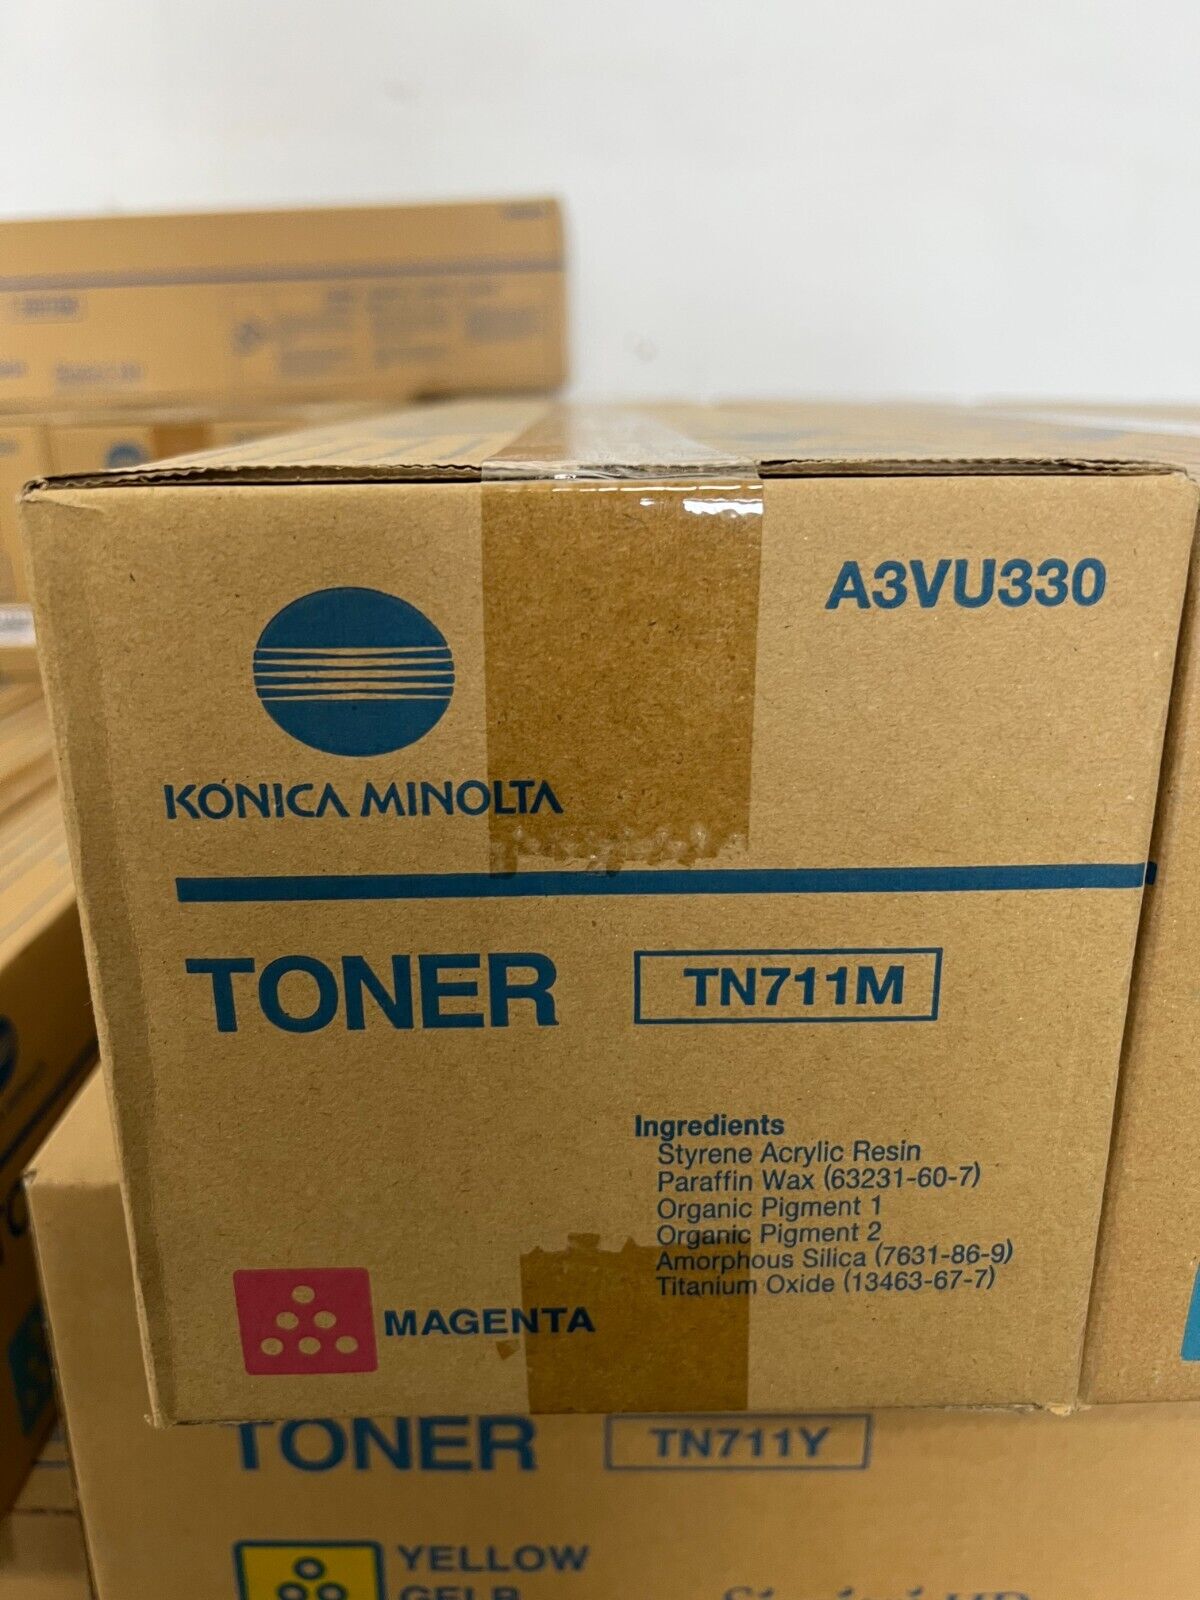 Konica Minolta (TN711M) Magenta Toner A3VU330